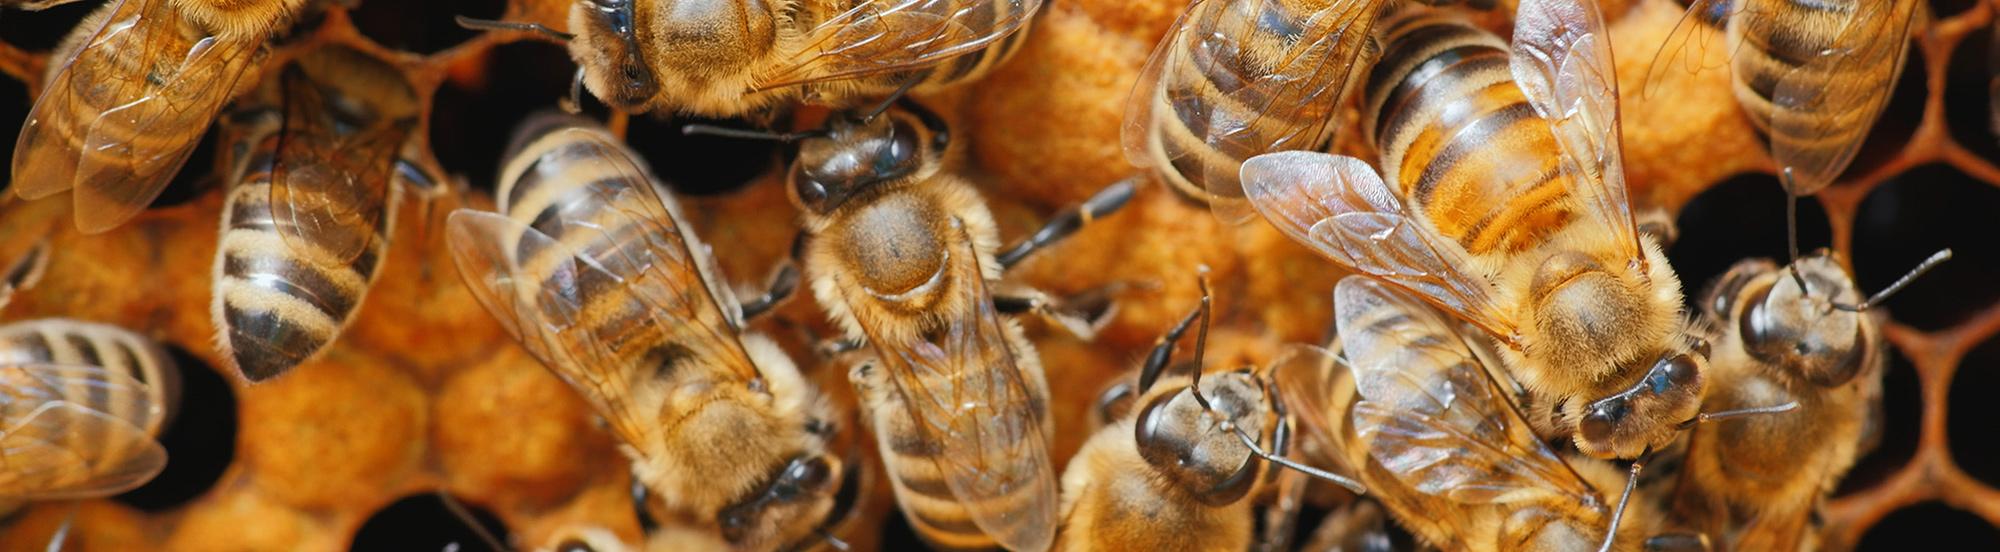 honey bees in nest